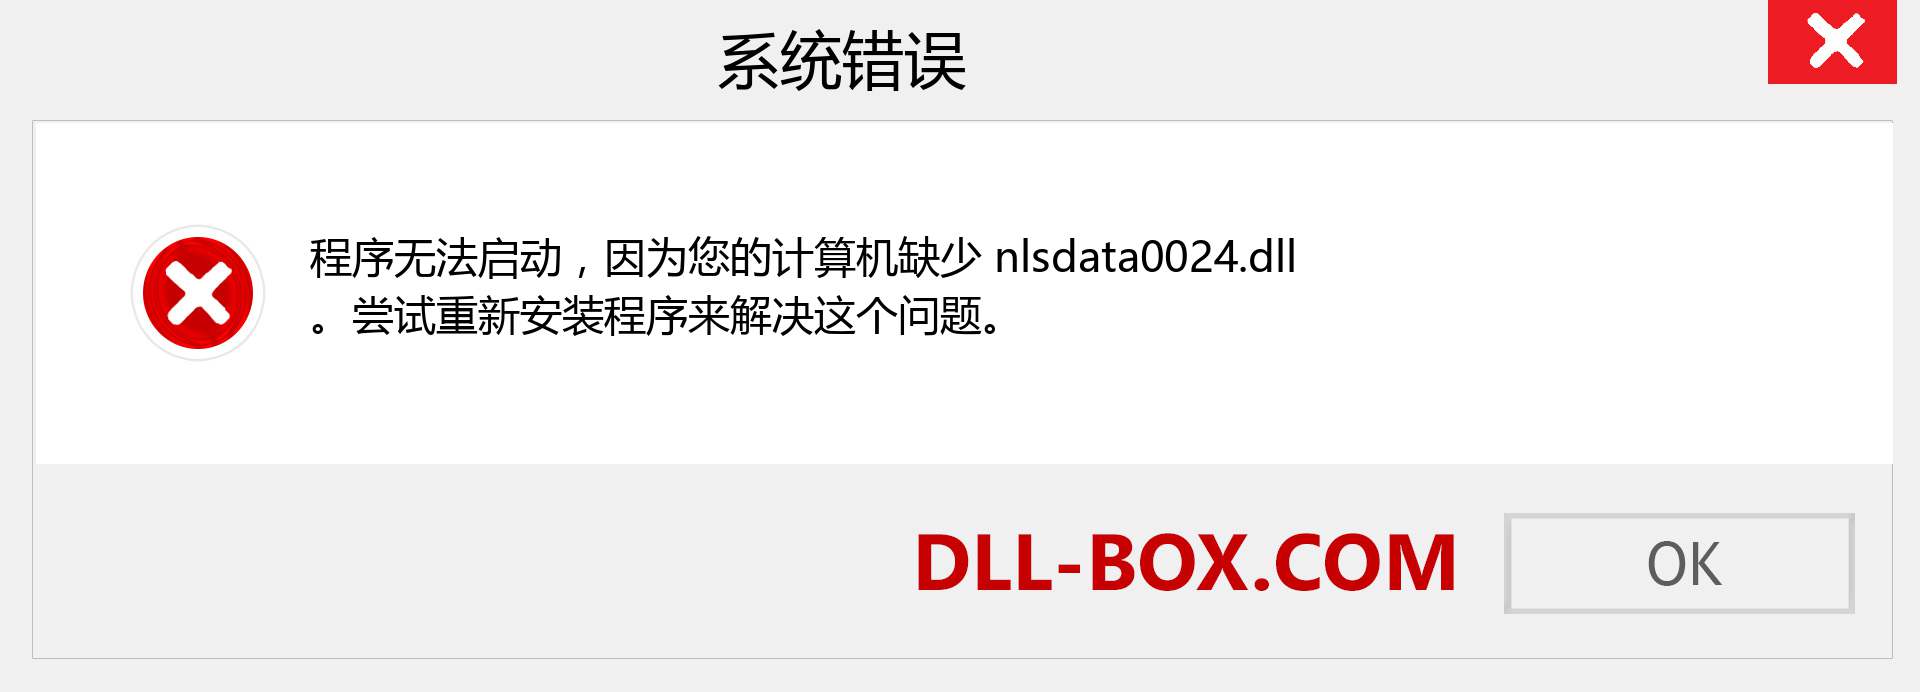 nlsdata0024.dll 文件丢失？。 适用于 Windows 7、8、10 的下载 - 修复 Windows、照片、图像上的 nlsdata0024 dll 丢失错误